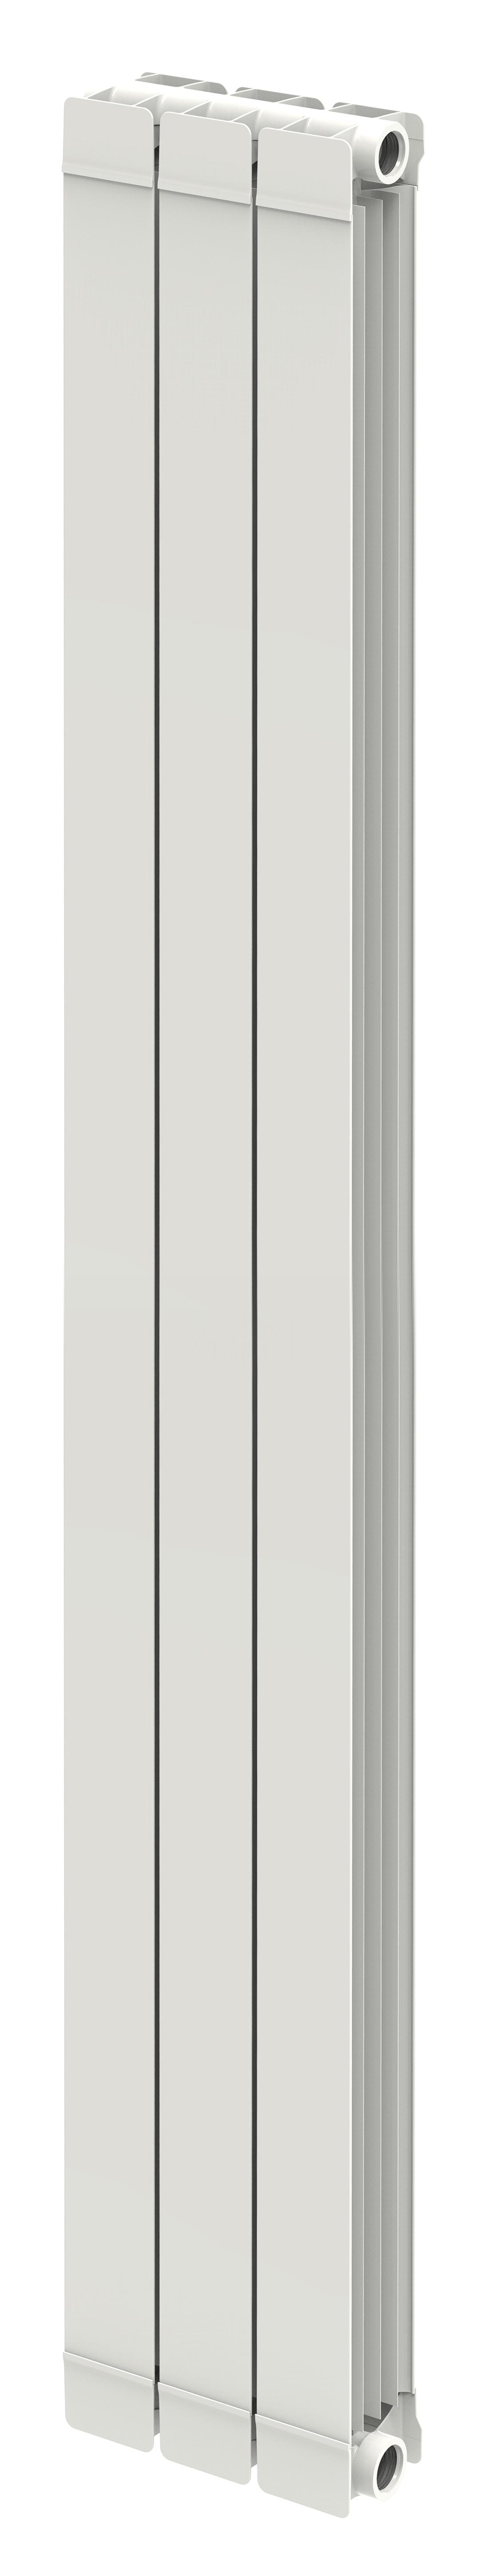 Radiador de agua TAL 2043mm 3 elementos con referencia 16506030 de la marca FERROLI